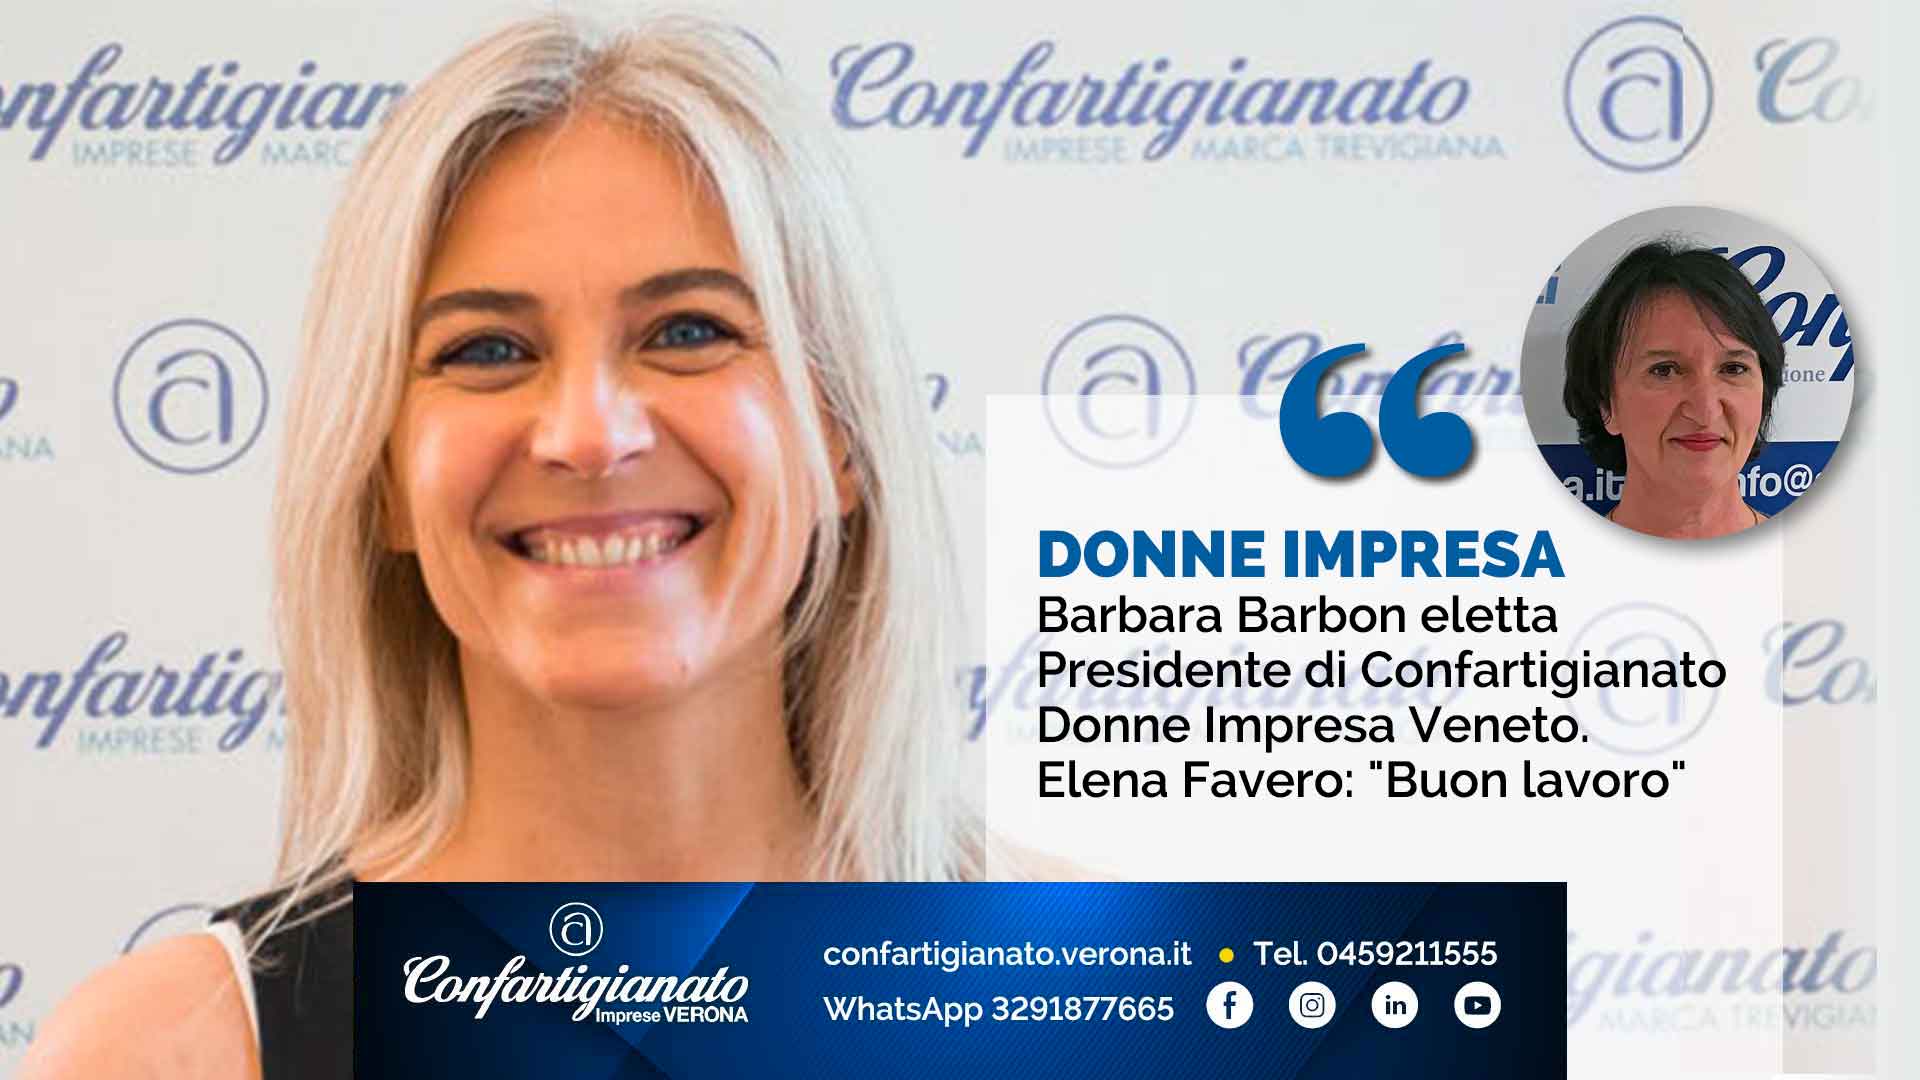 DONNE – Barbara Barbon eletta Presidente di Confartigianato Donne Impresa Veneto. Elena Favero: "Buon lavoro"